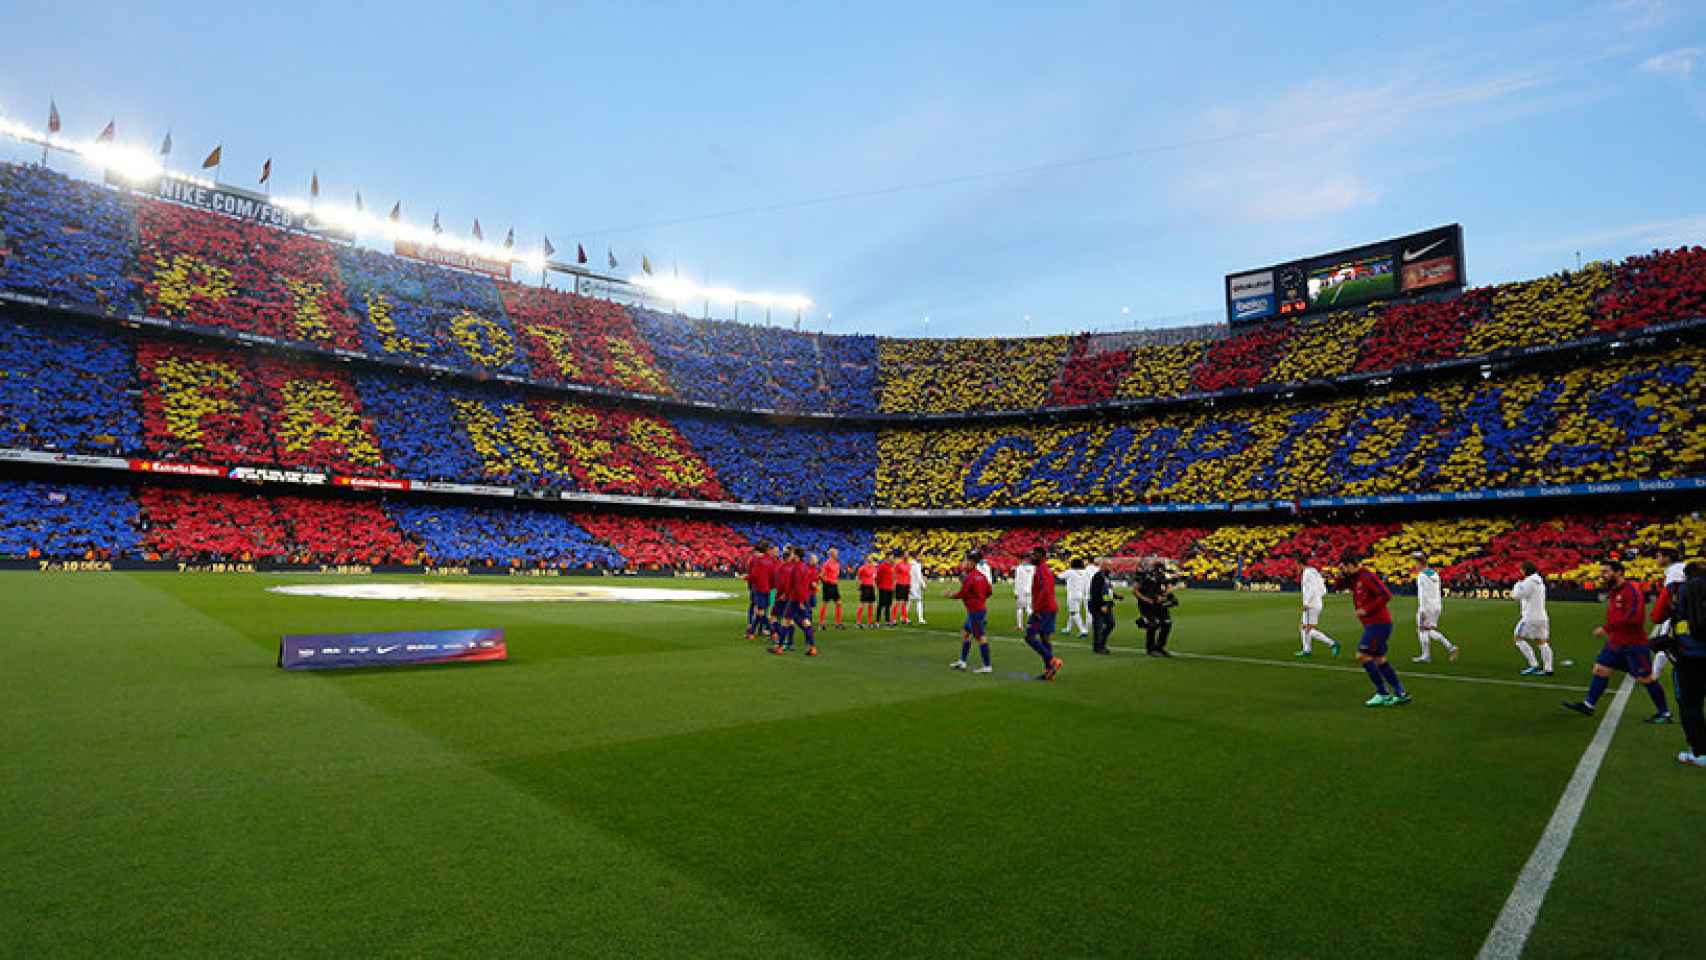 Mosaico del Camp Nou para El Clásico. Foto: Manu Laya/El Bernabéu